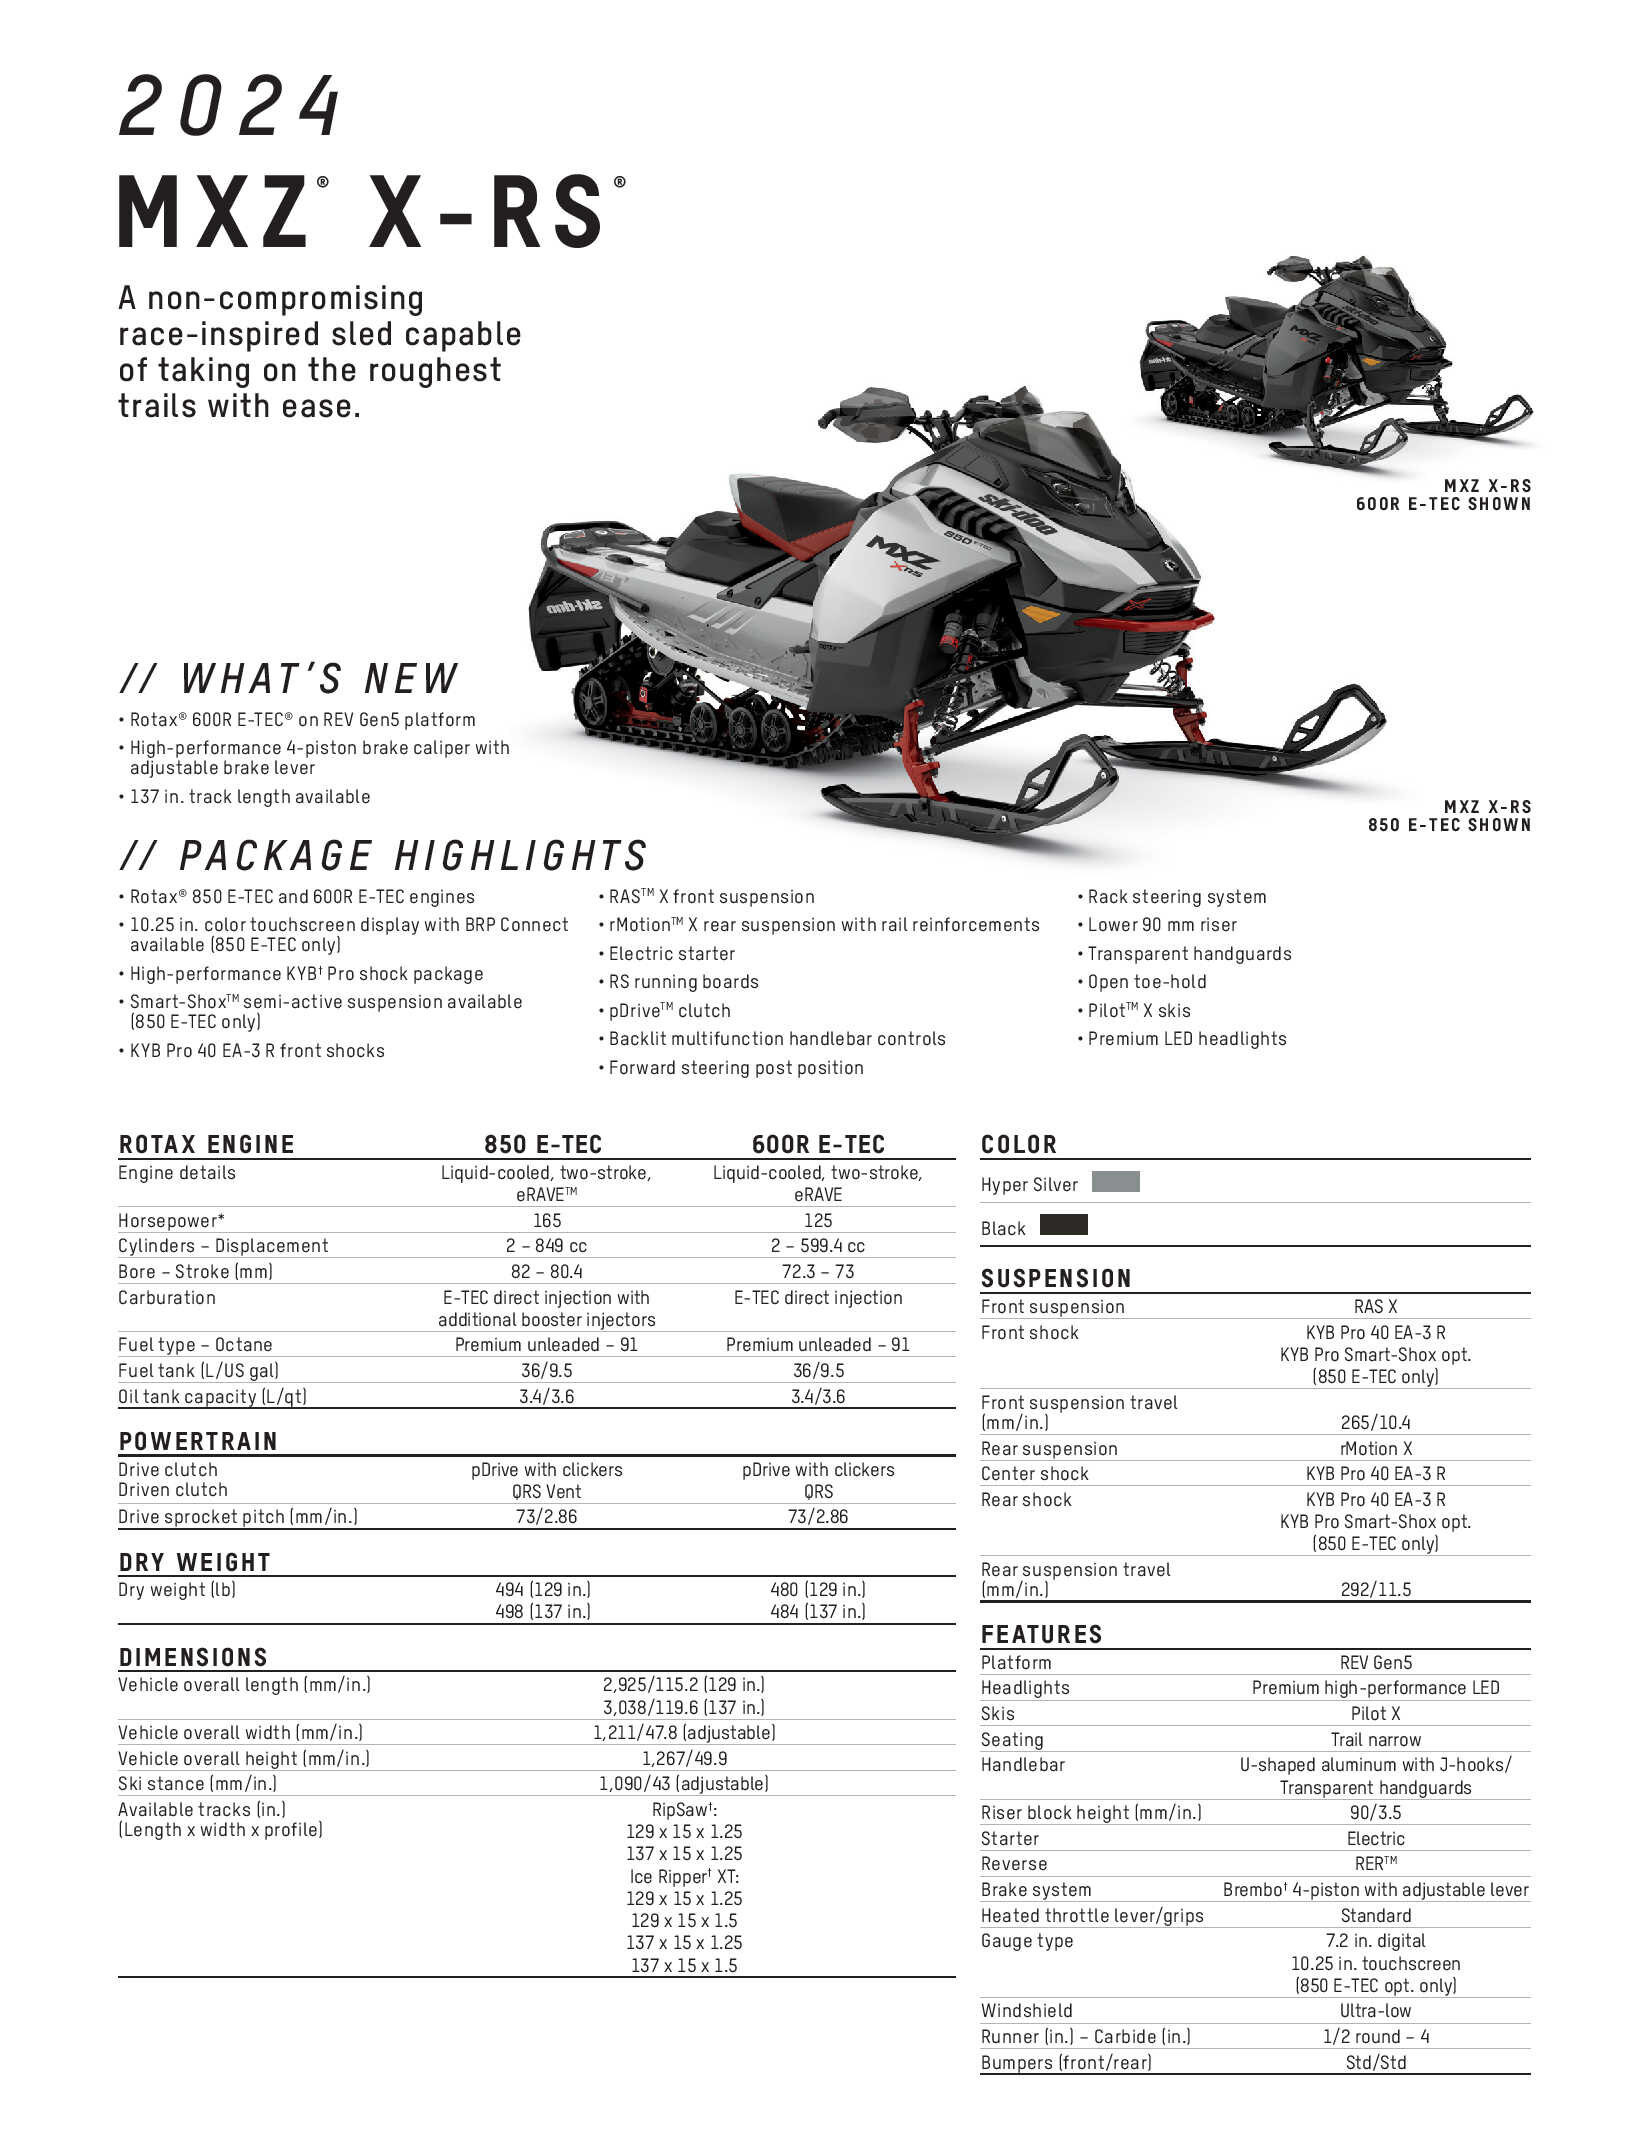 2024 Ski-Doo MXZ X-RS Specs